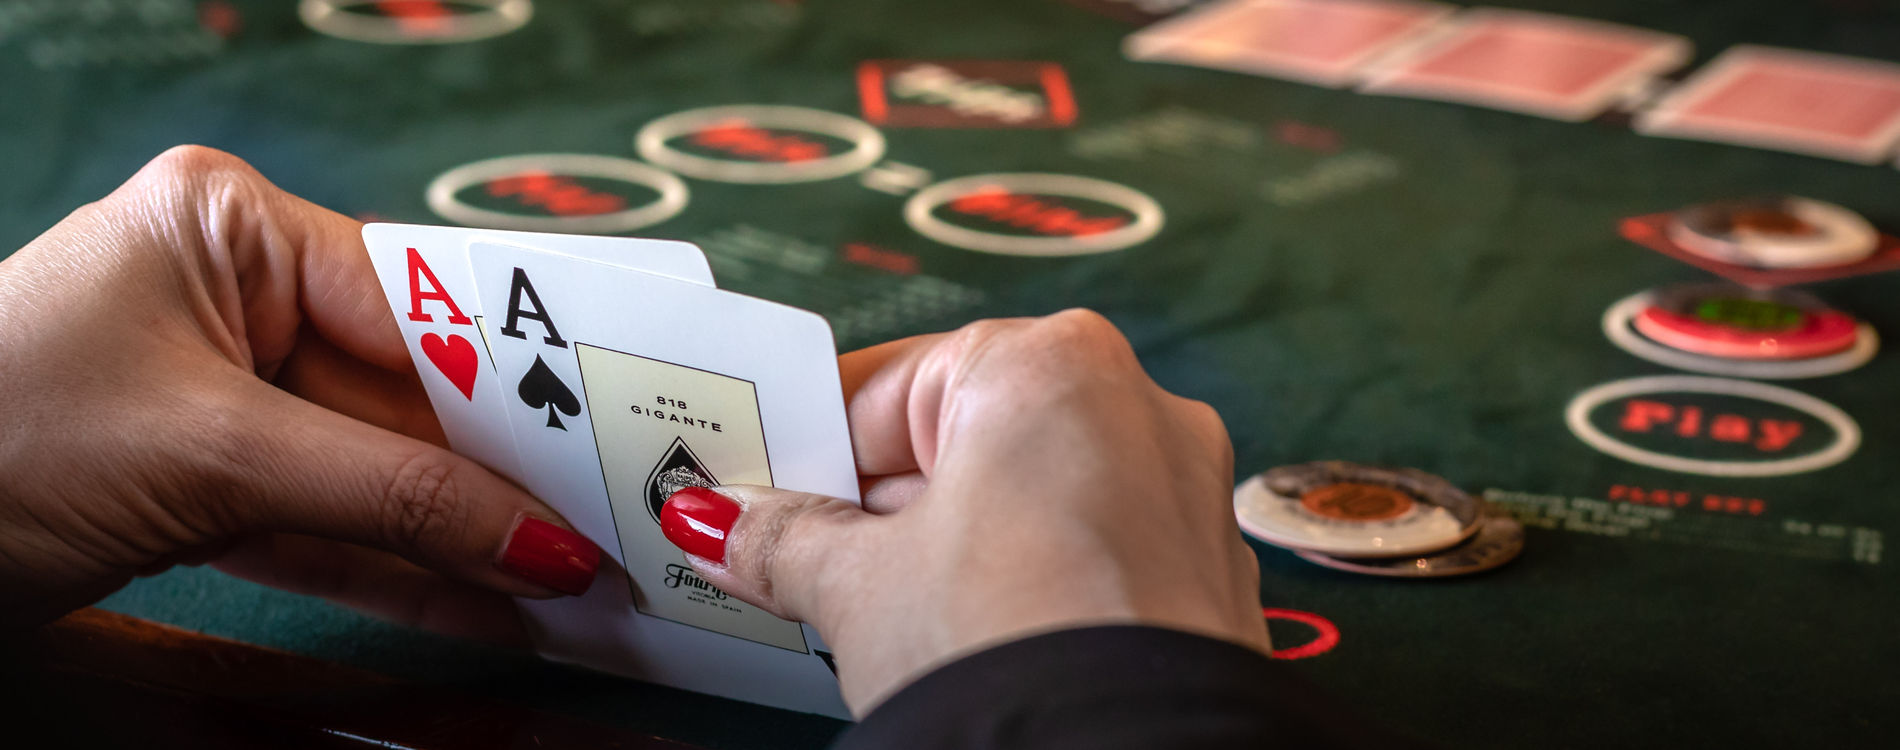 Texas holdem poker online casino